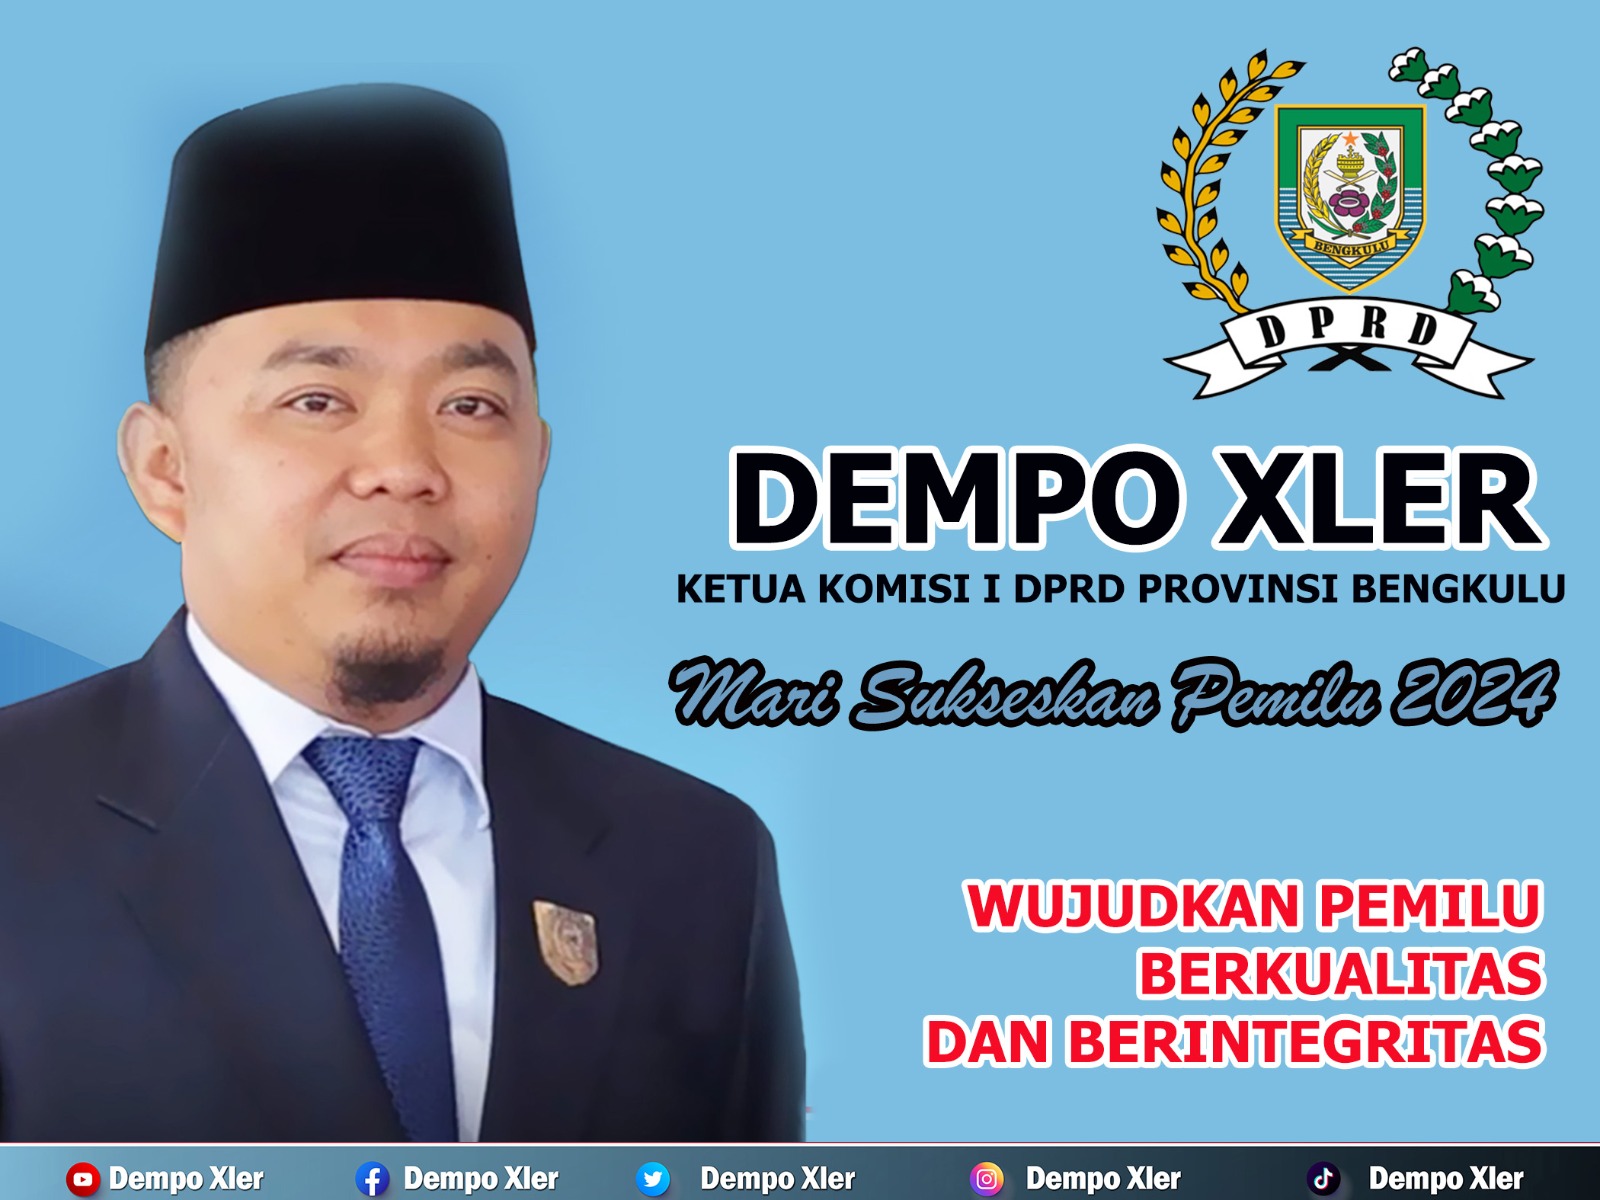  Ketua Komisi I DPRD Provinsi Bengkulu Dempo Xler, "Mari Sukseskan Pemilu 2023" 